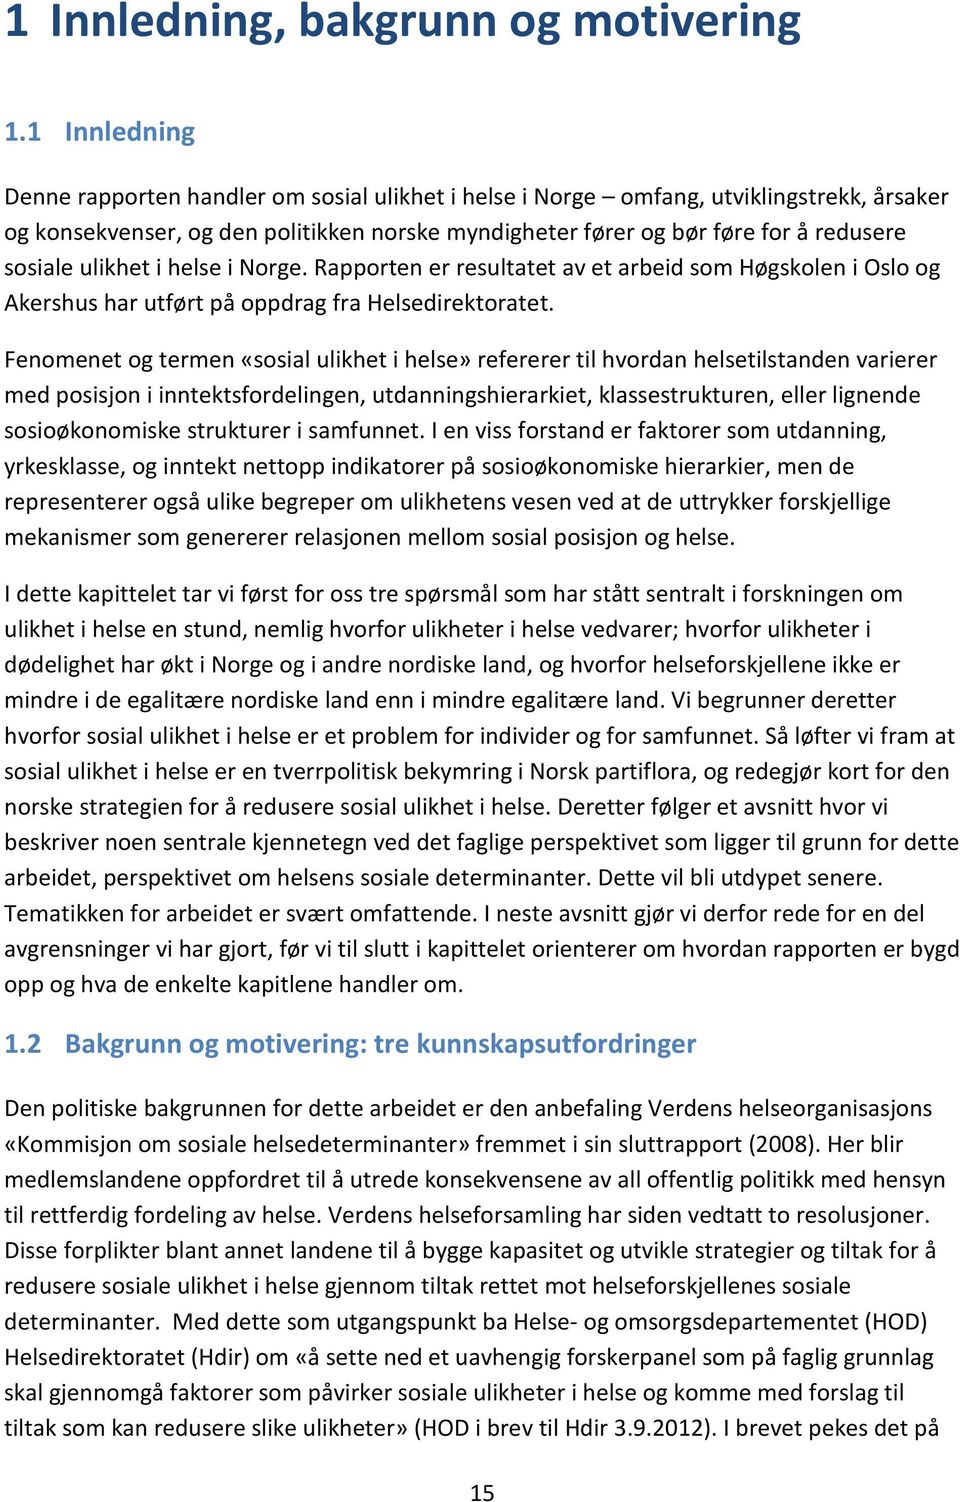 ulikhet i helse i Norge. Rapporten er resultatet av et arbeid som Høgskolen i Oslo og Akershus har utført på oppdrag fra Helsedirektoratet.